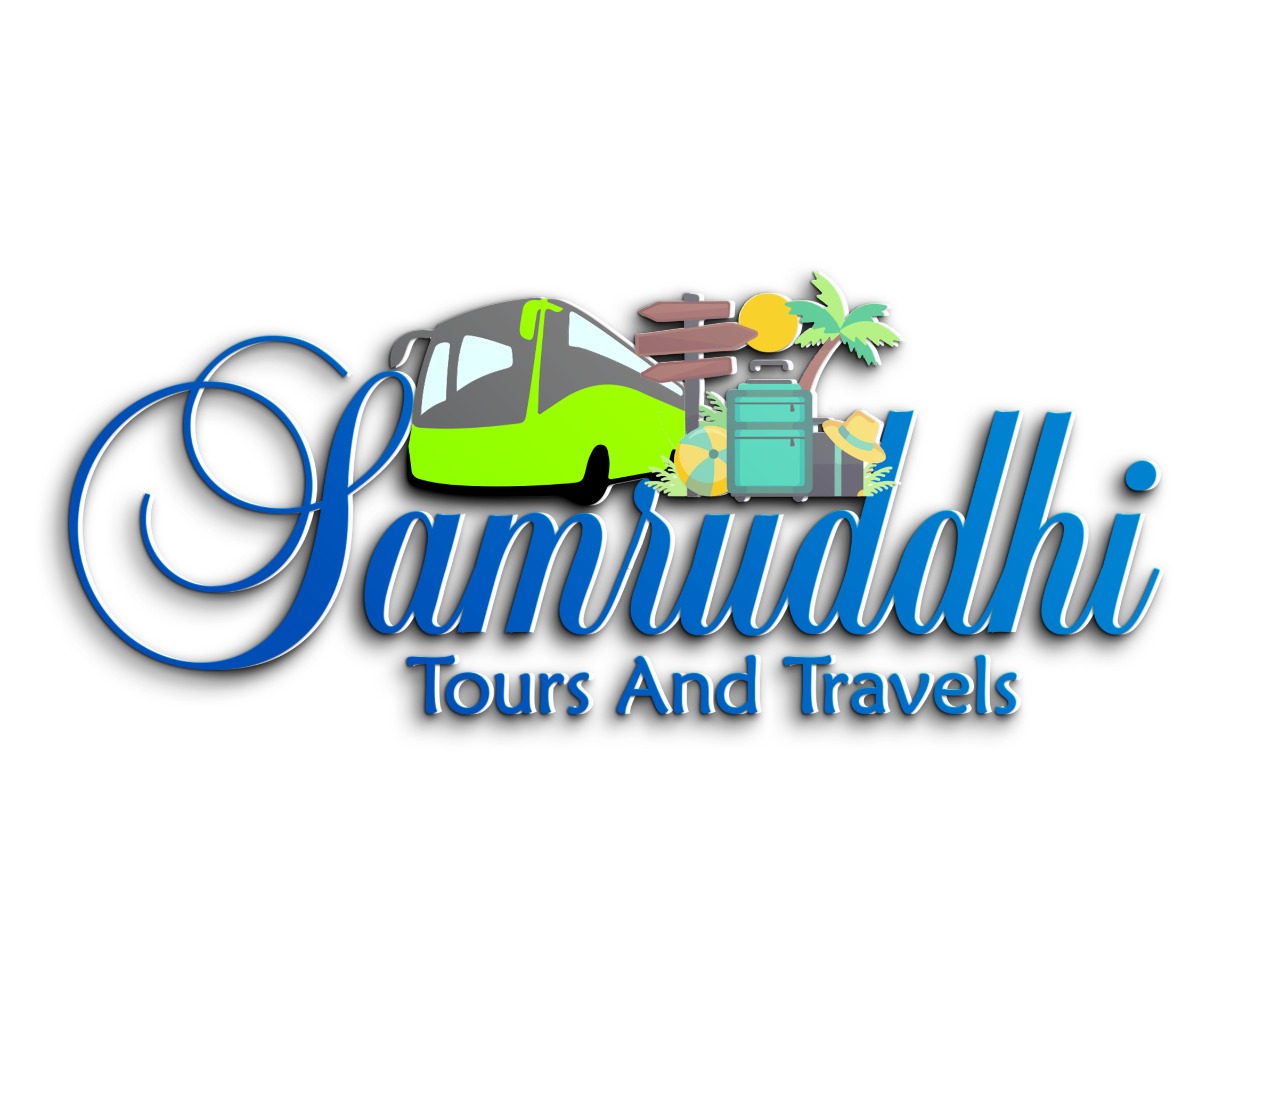 Samruddhi Tours and Travels